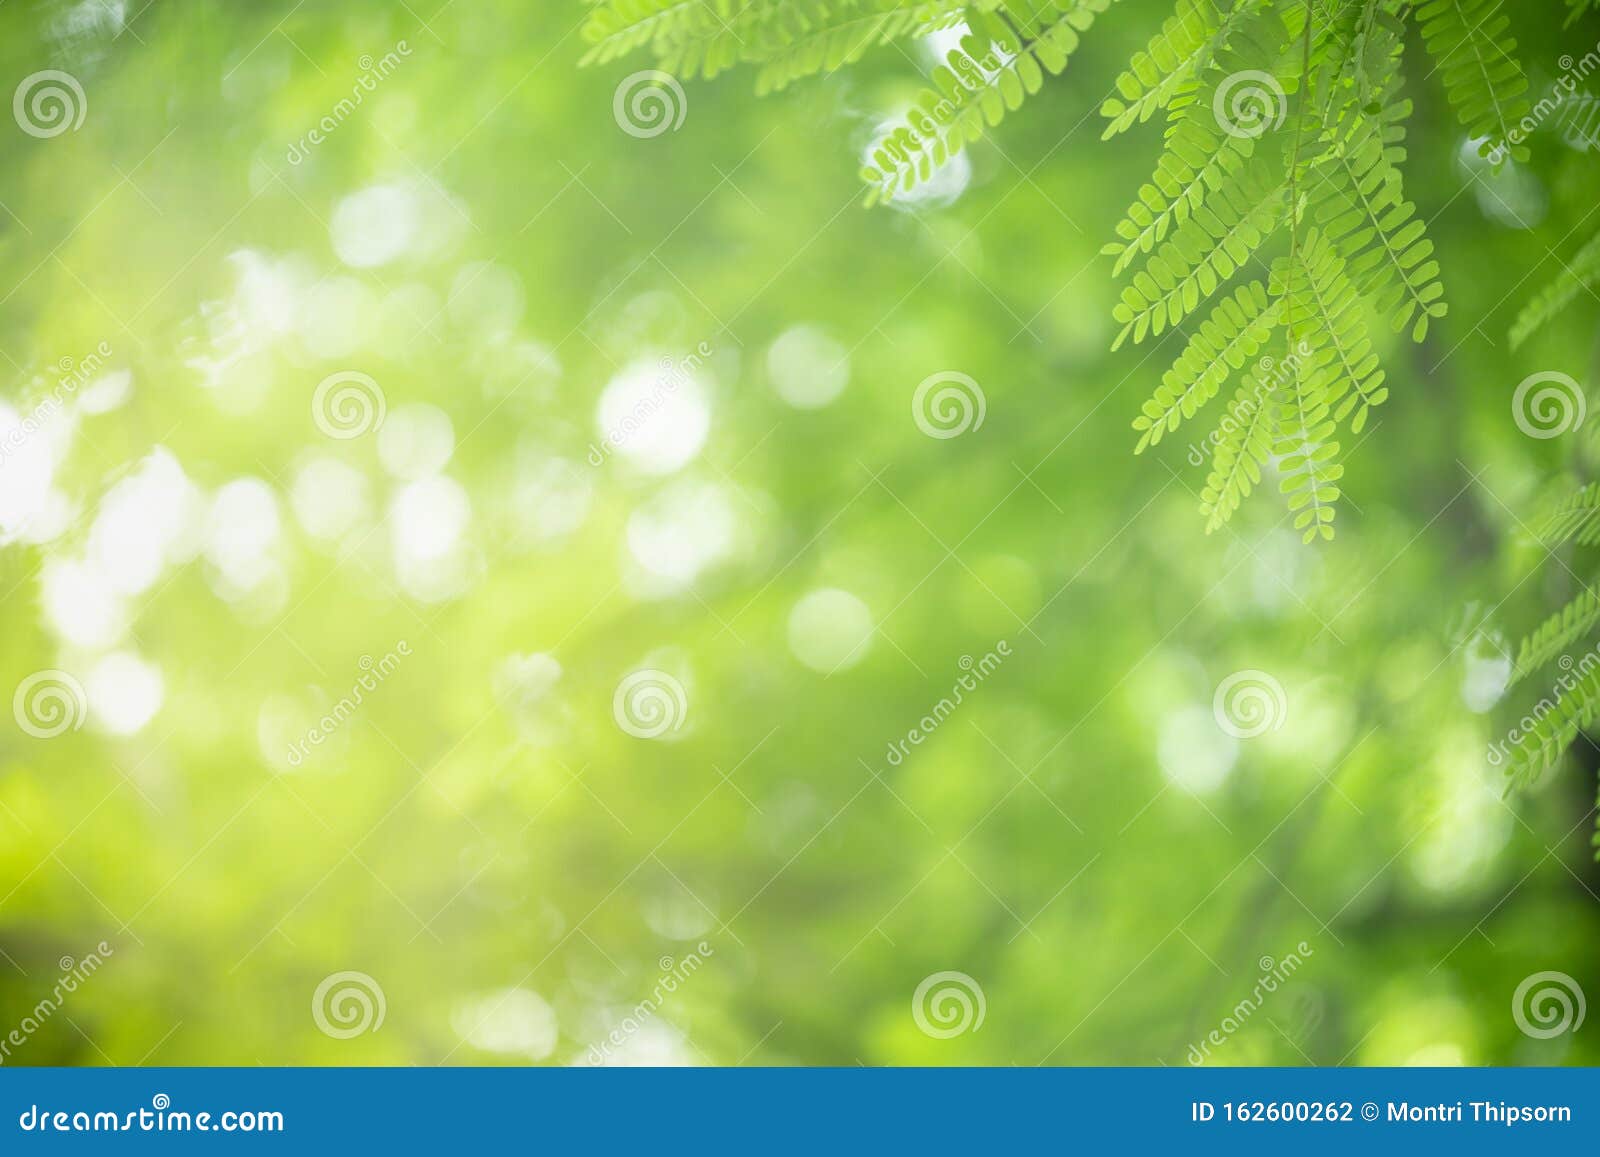 Hãy ngắm nhìn những tia nắng chiếu lên lá xanh tươi rực rỡ trong hình ảnh tuyệt đẹp này. Mọi chi tiết trên mặt cây đều được tô điểm bởi mảng xanh tươi sắc, tạo nên một bức tranh hoàn hảo của thiên nhiên.